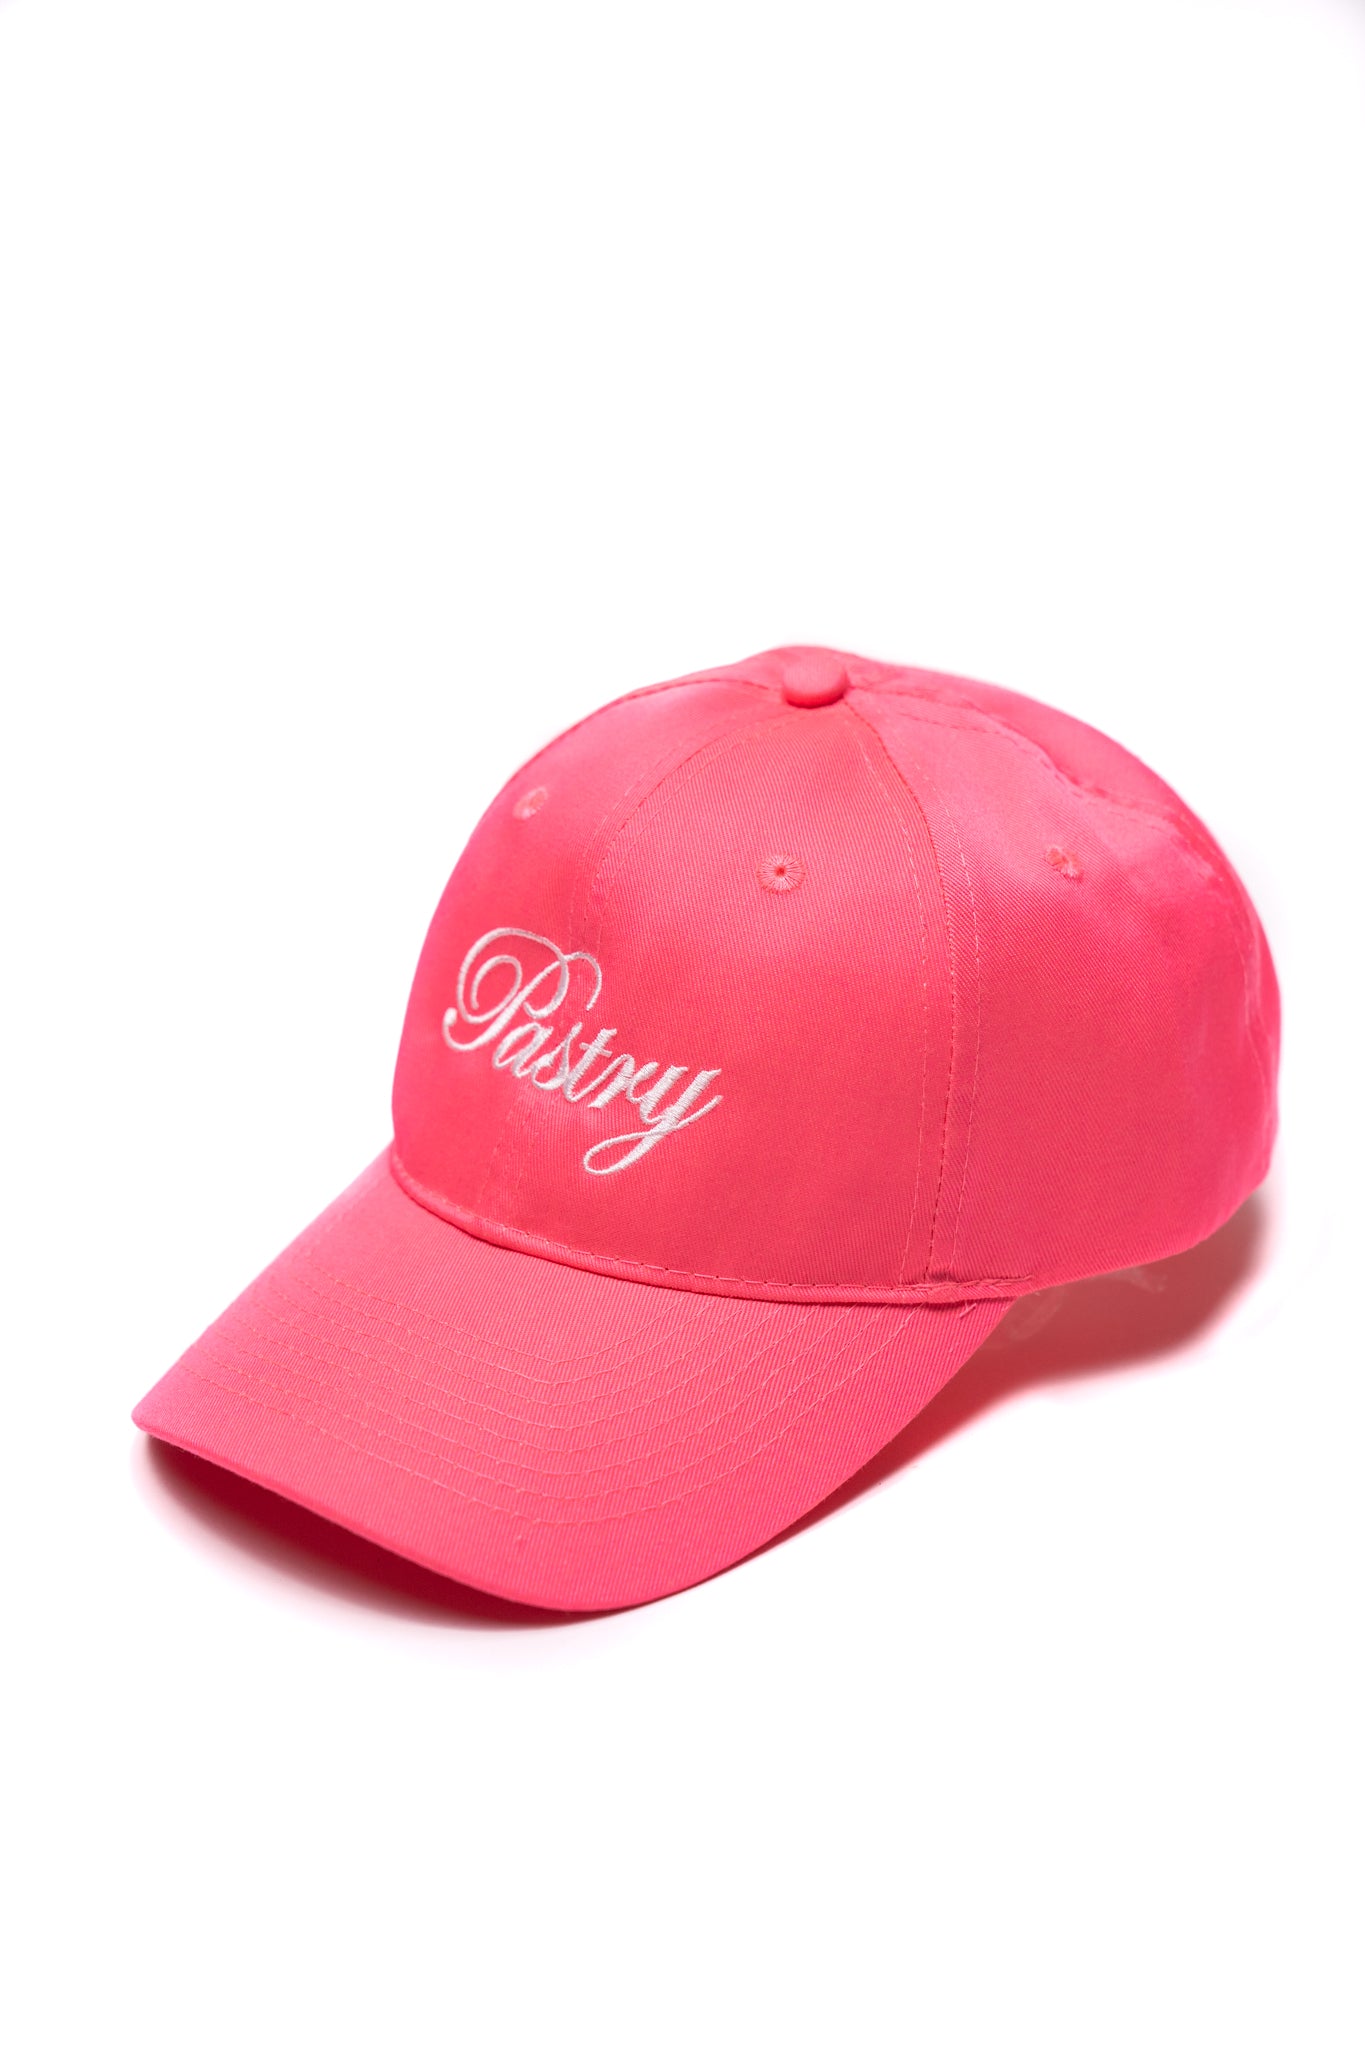 Neon Pink Pastry Cap